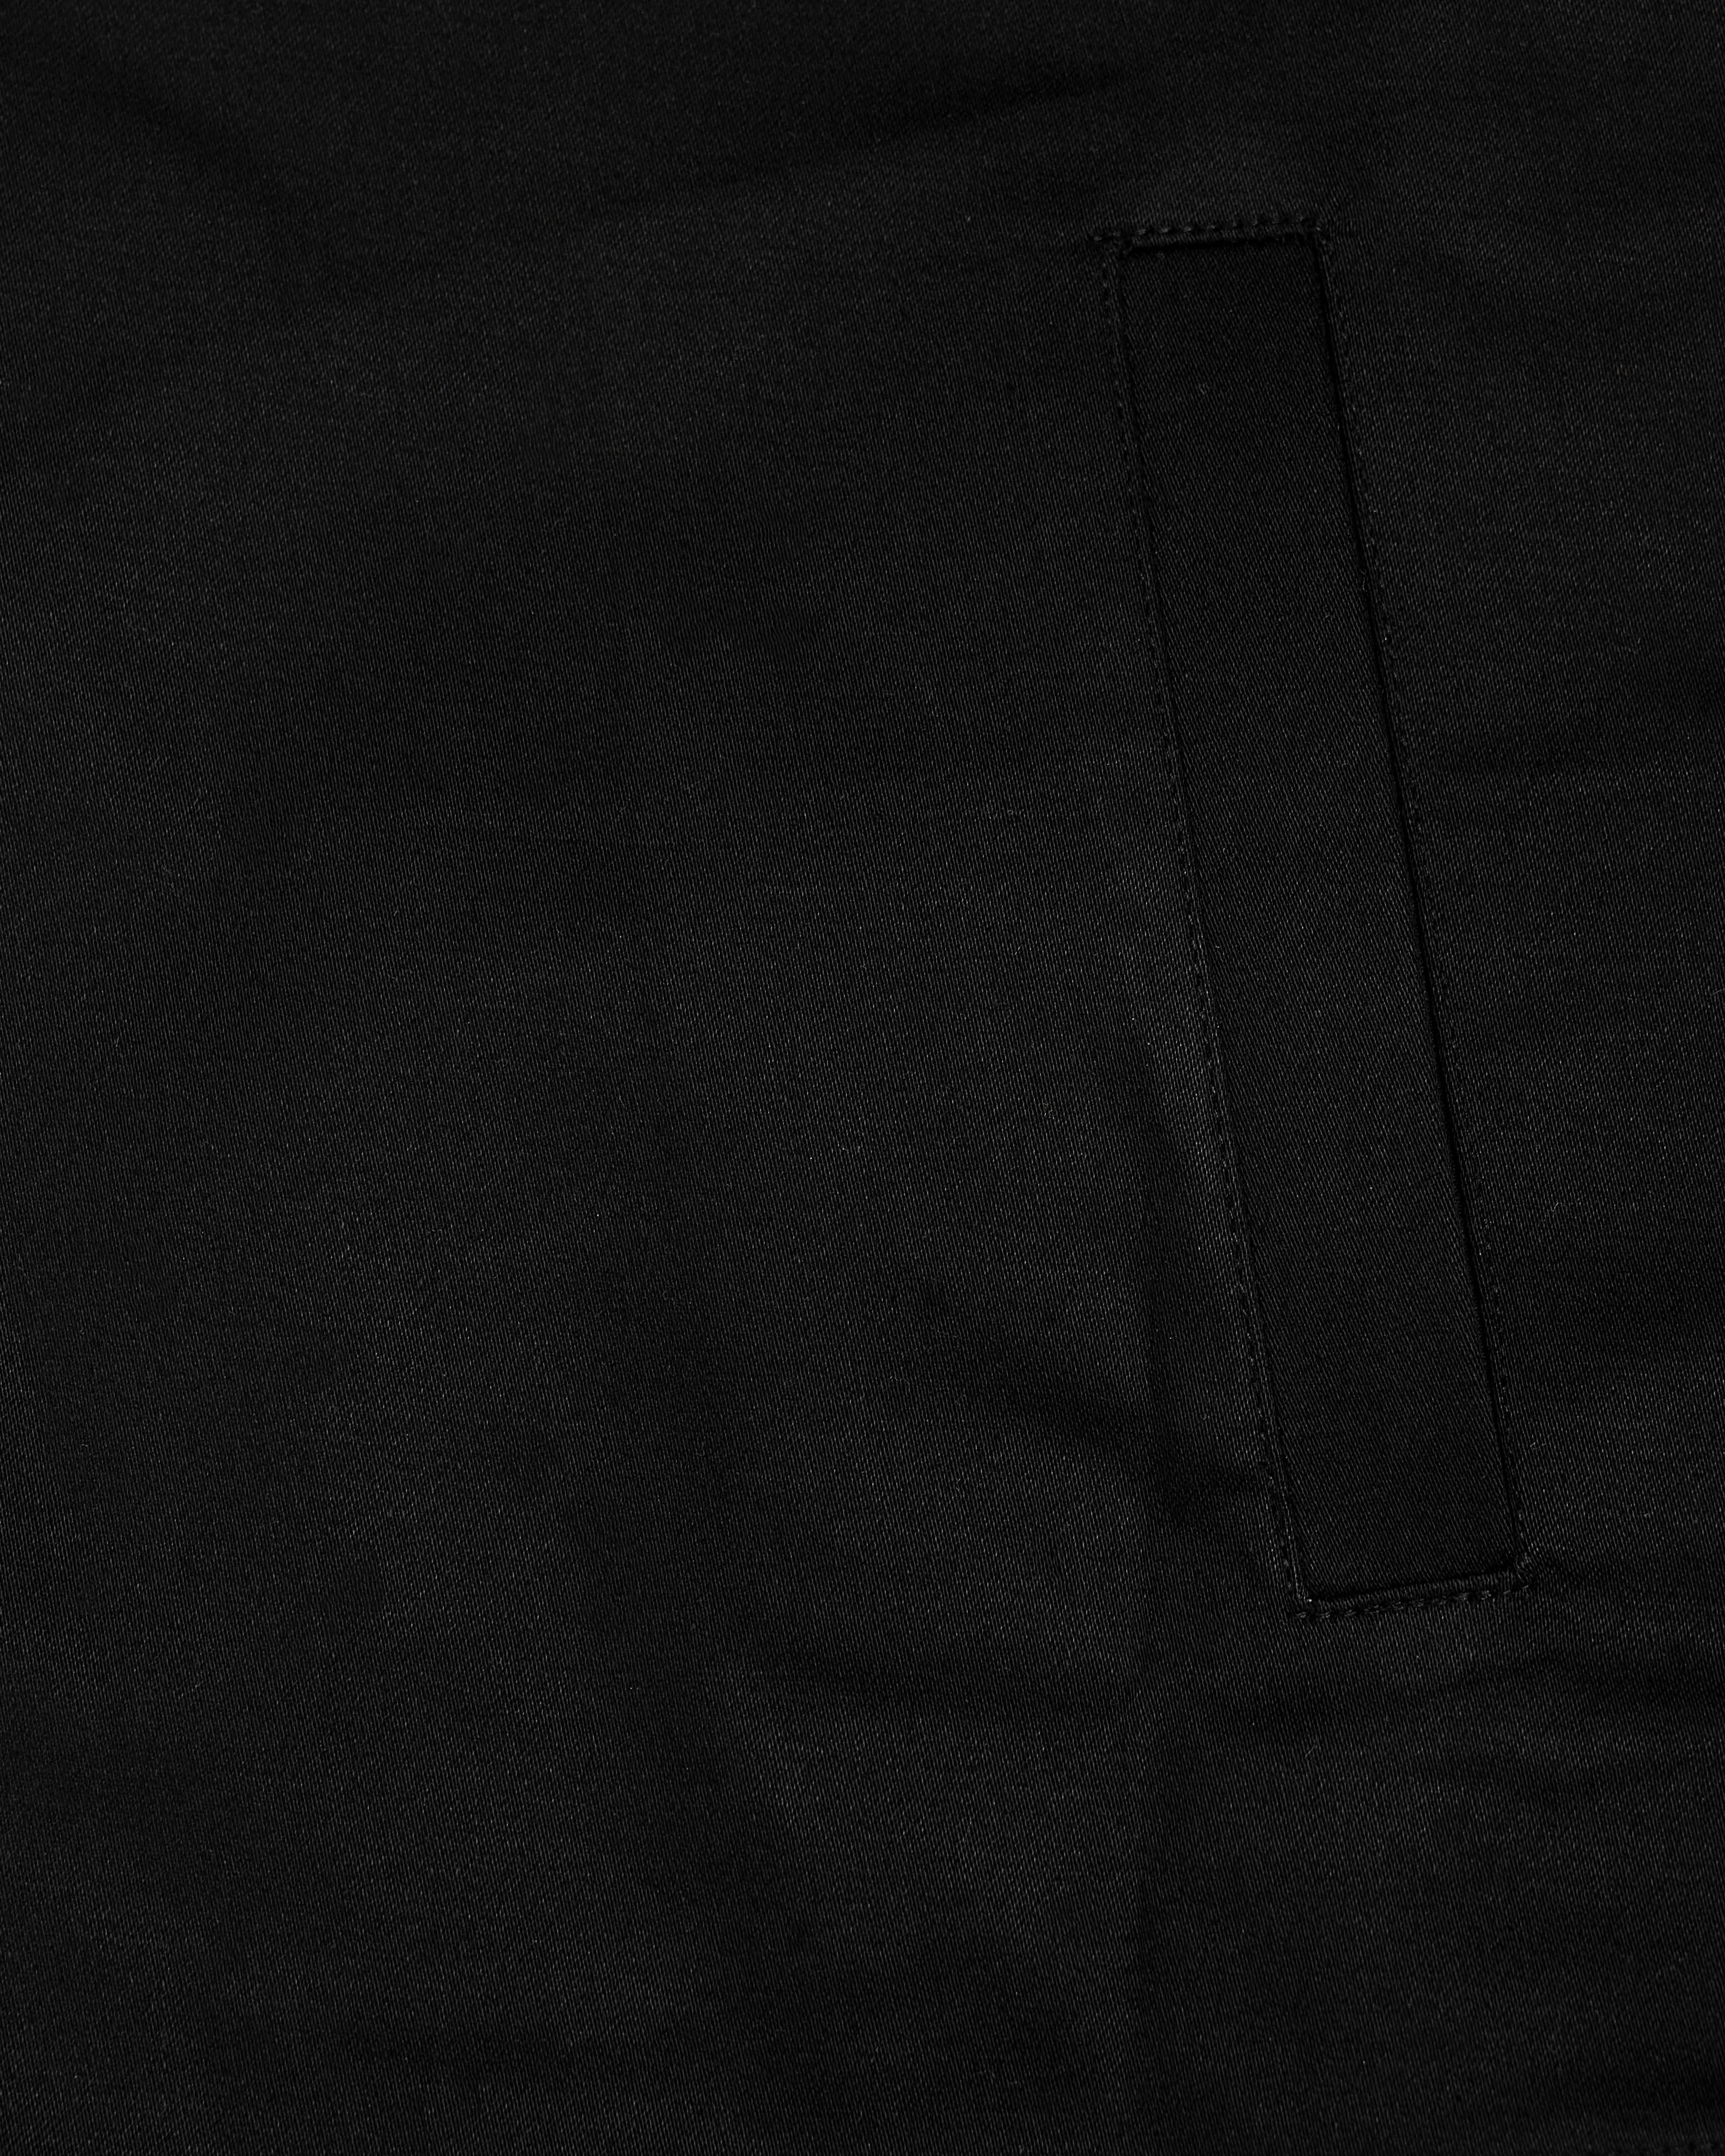 Jade Black Heavyweight Giza Cotton Over Shirt 3603OS-38, 3603OS-H-38, 3603OS-39, 3603OS-H-39, 3603OS-40, 3603OS-H-40, 3603OS-42, 3603OS-H-42, 3603OS-44, 3603OS-H-44, 3603OS-46, 3603OS-H-46, 3603OS-48, 3603OS-H-48, 3603OS-50, 3603OS-H-50, 3603OS-52, 3603OS-H-52